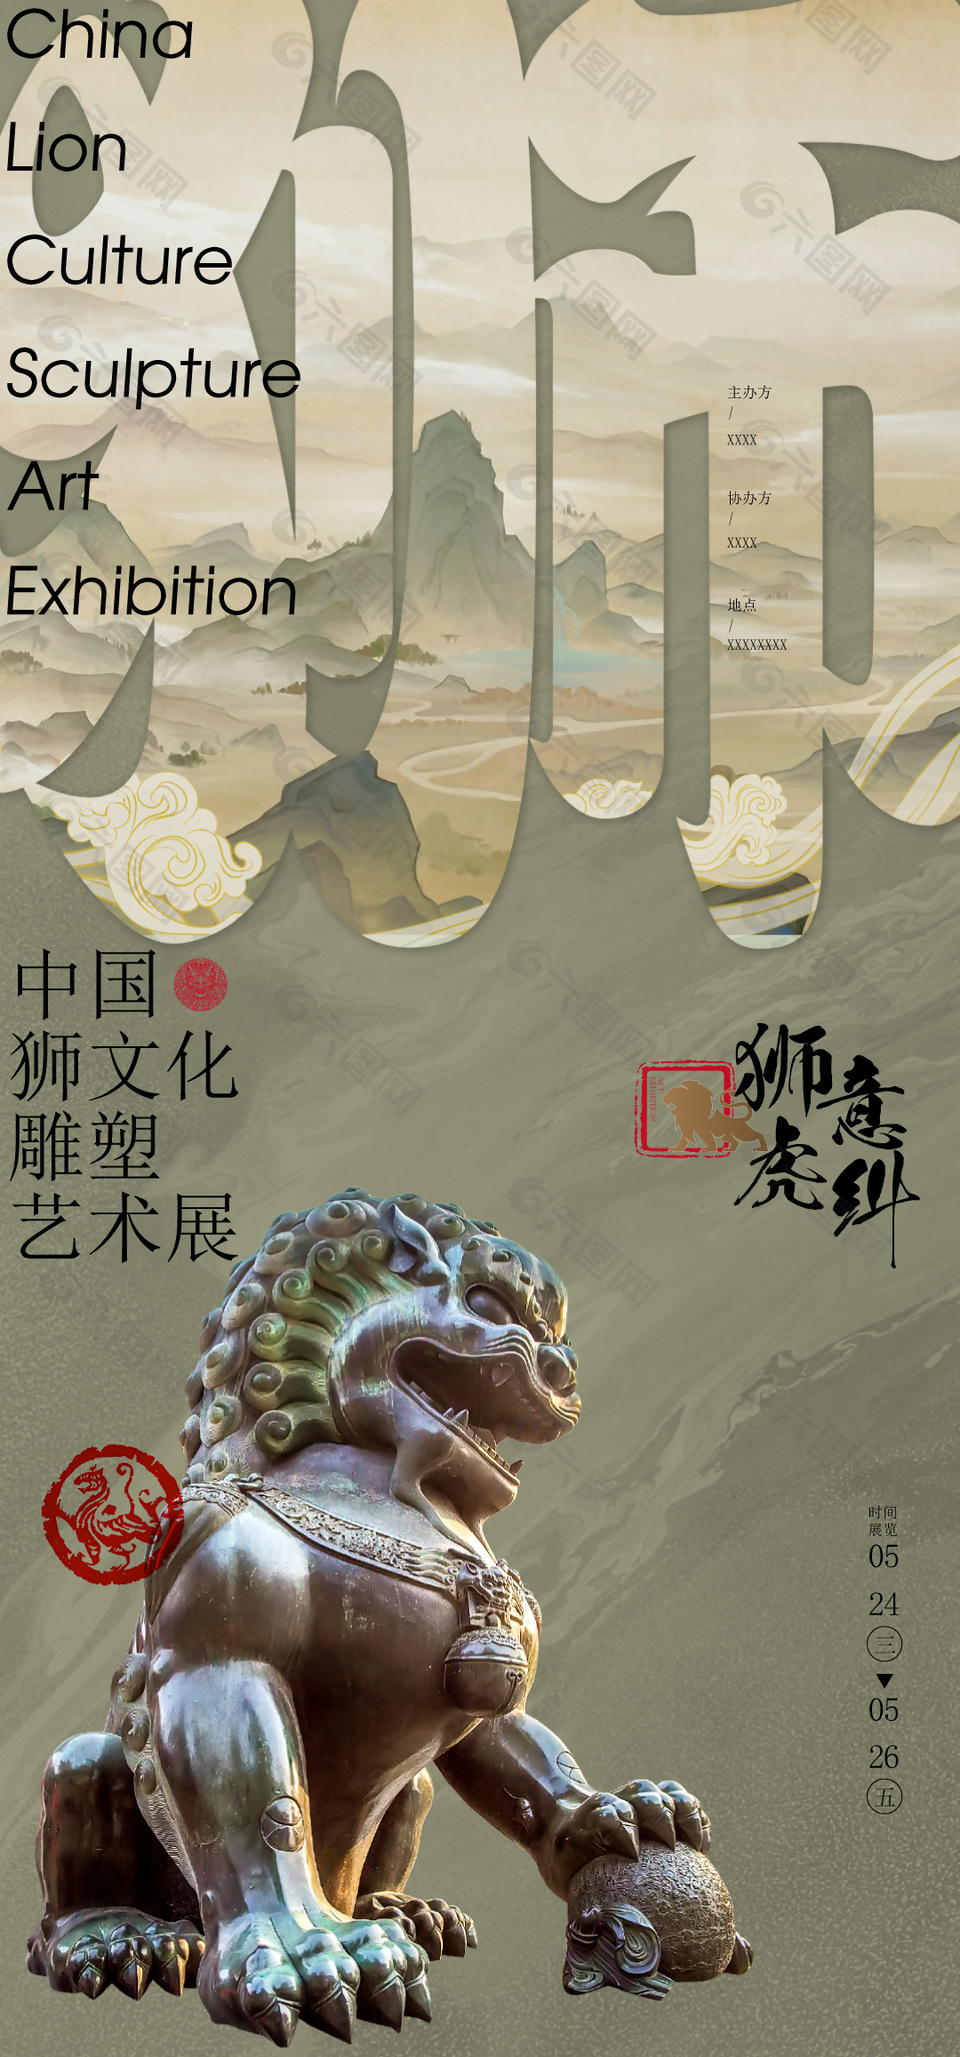 狮文化雕塑艺术展宣传海报